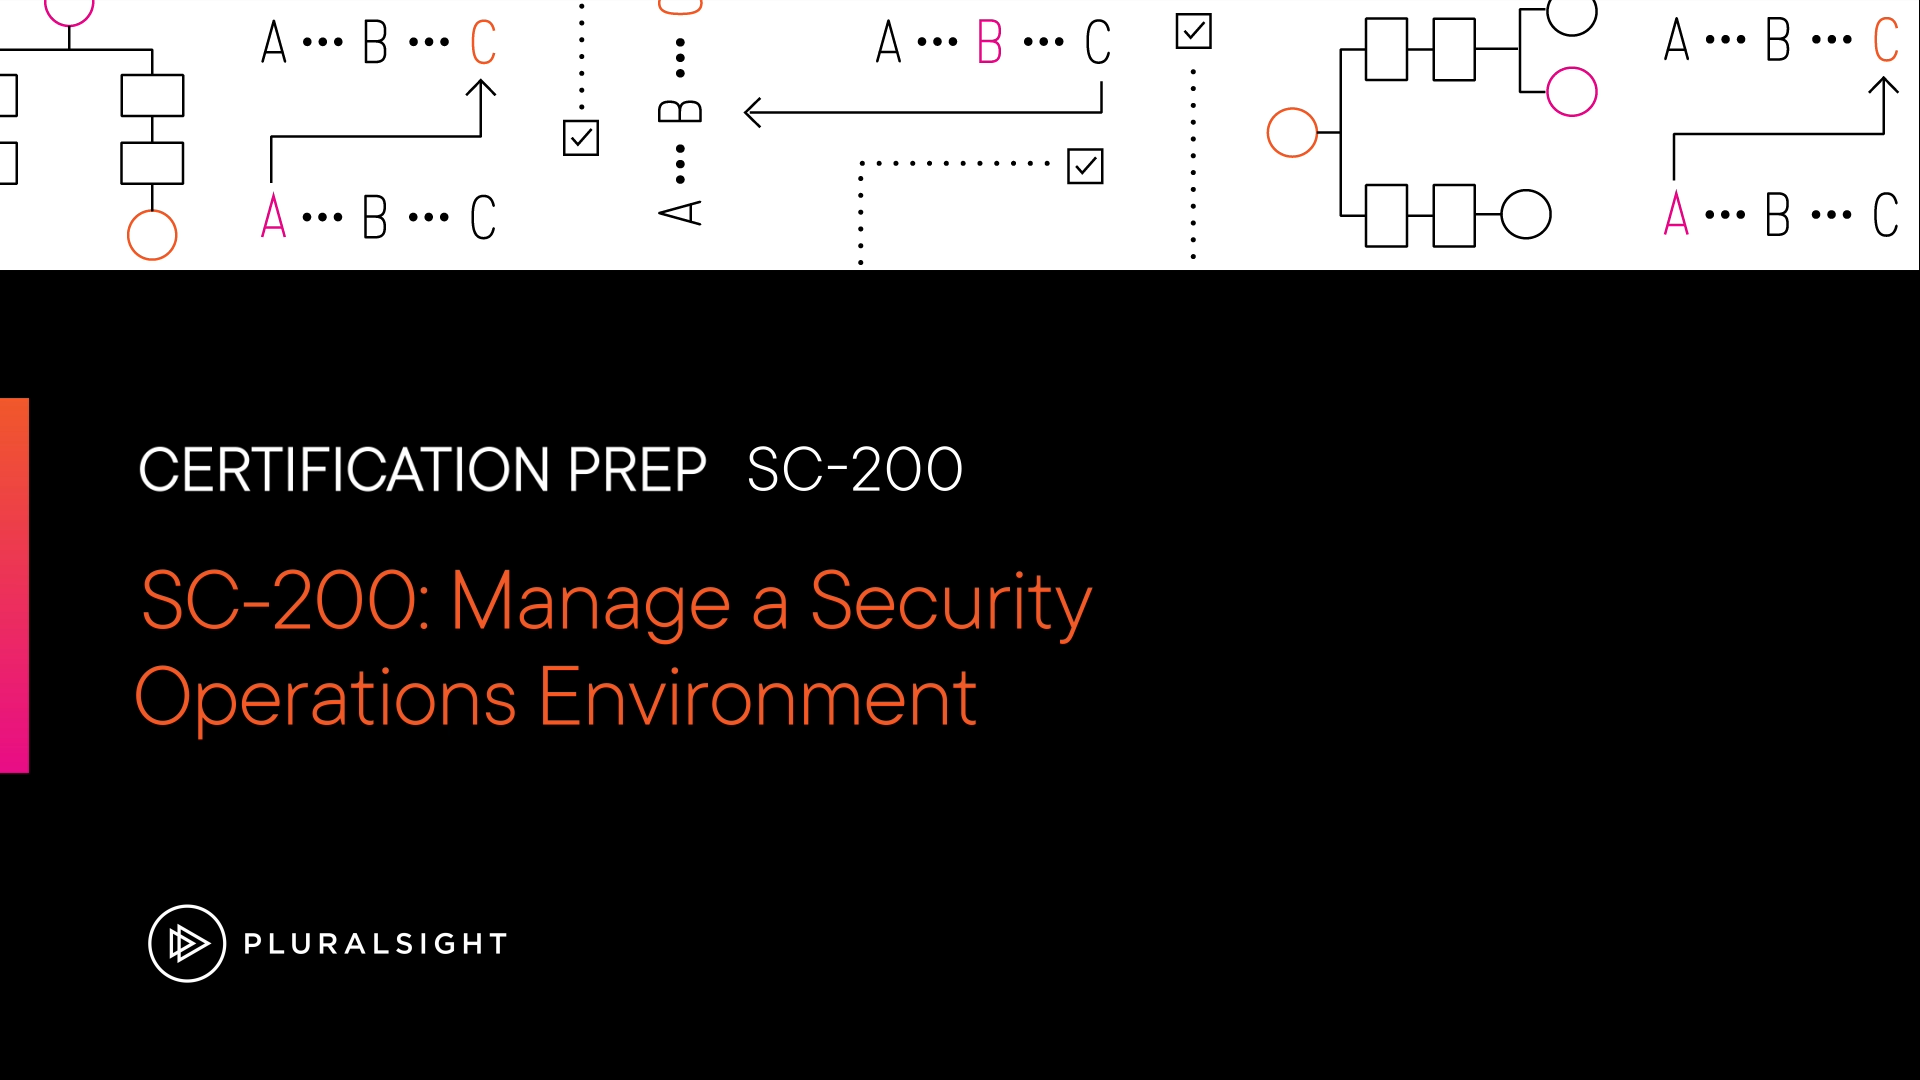 آموزش SC-200: مدیریت یک محیط عملیات امنیتی